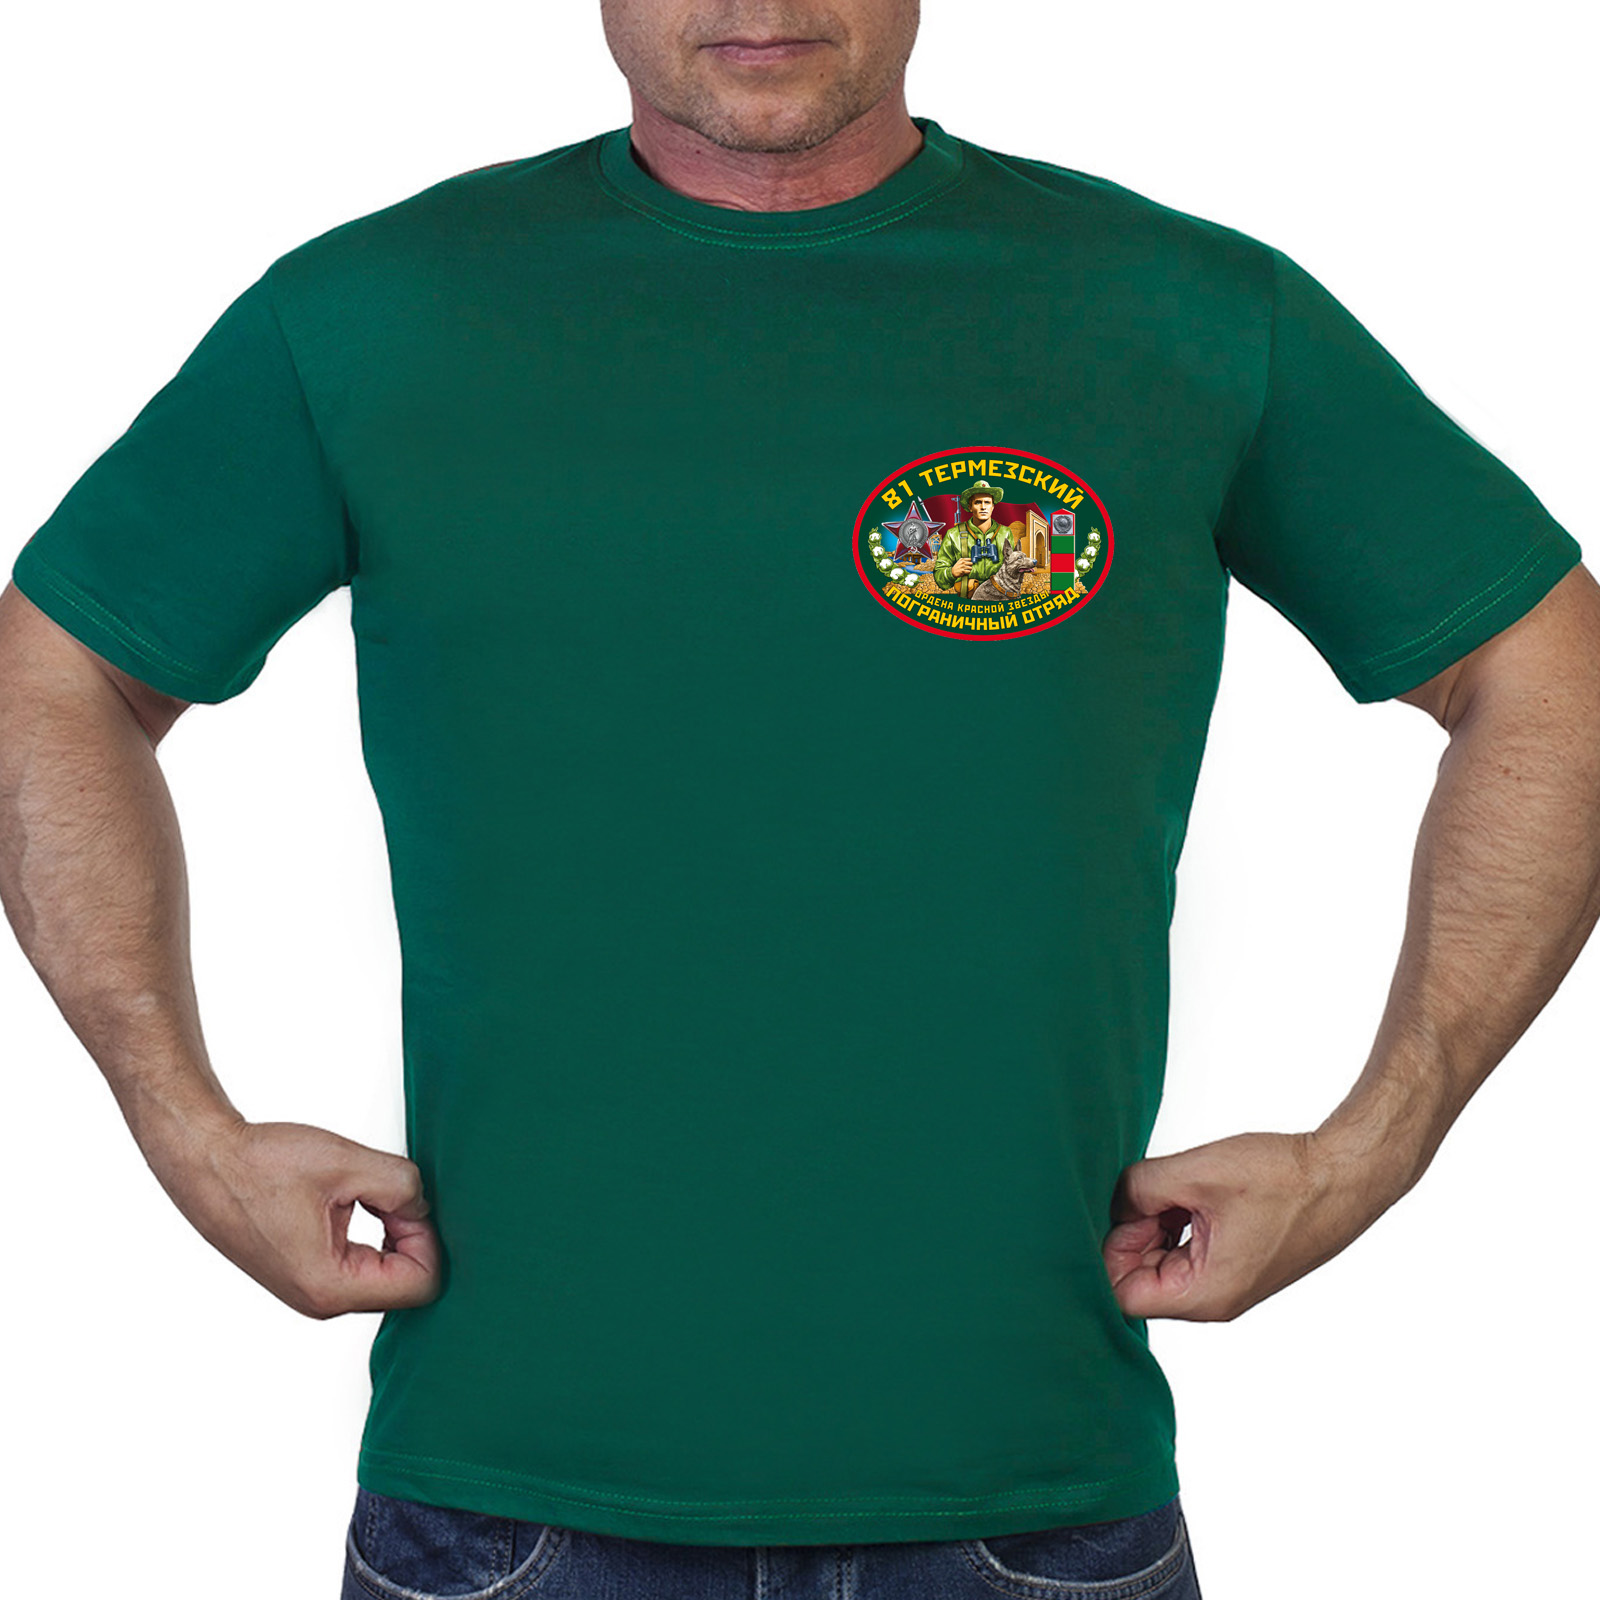 Зелёная футболка "81 Термезский пограничный отряд"